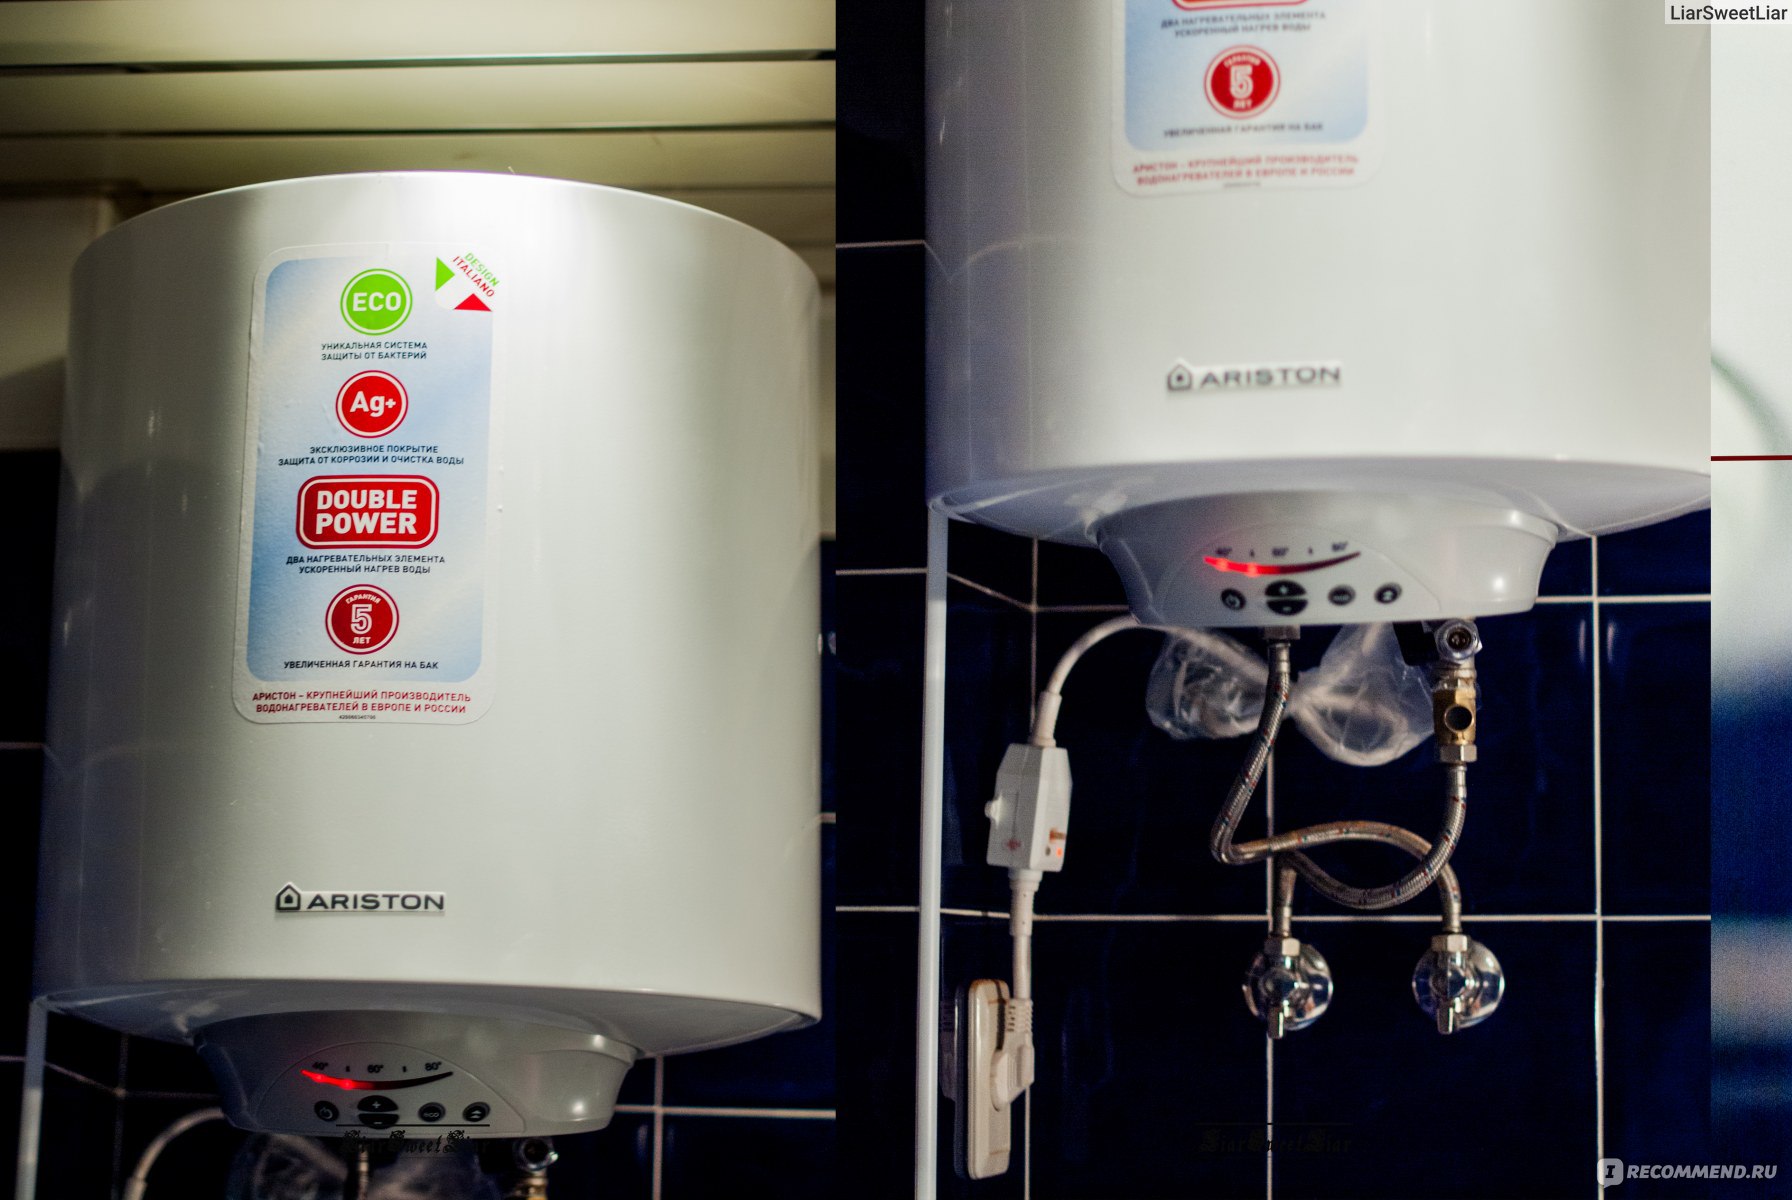 Топ-15 лучших накопительных электрических водонагревателей 50 литров: рейтинг 2020 года и основные параметры устройств